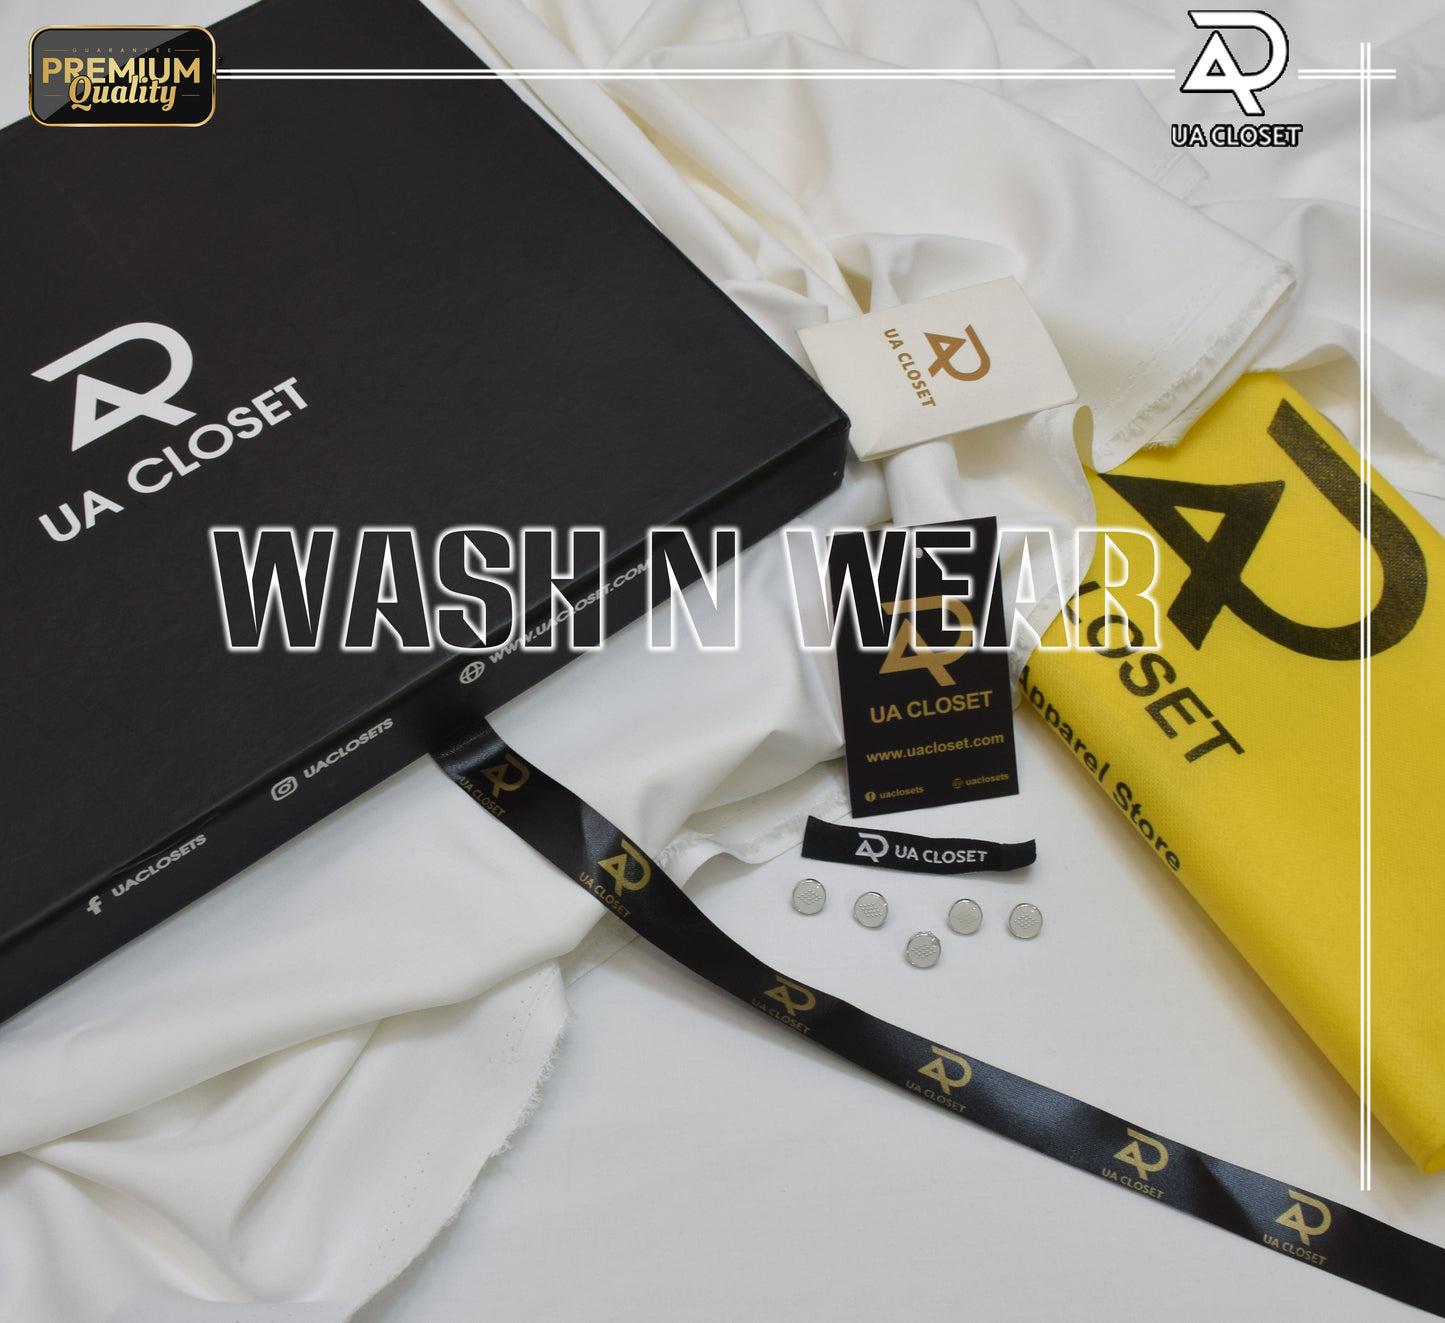 Italian Wash n Wear Gift Box Packing